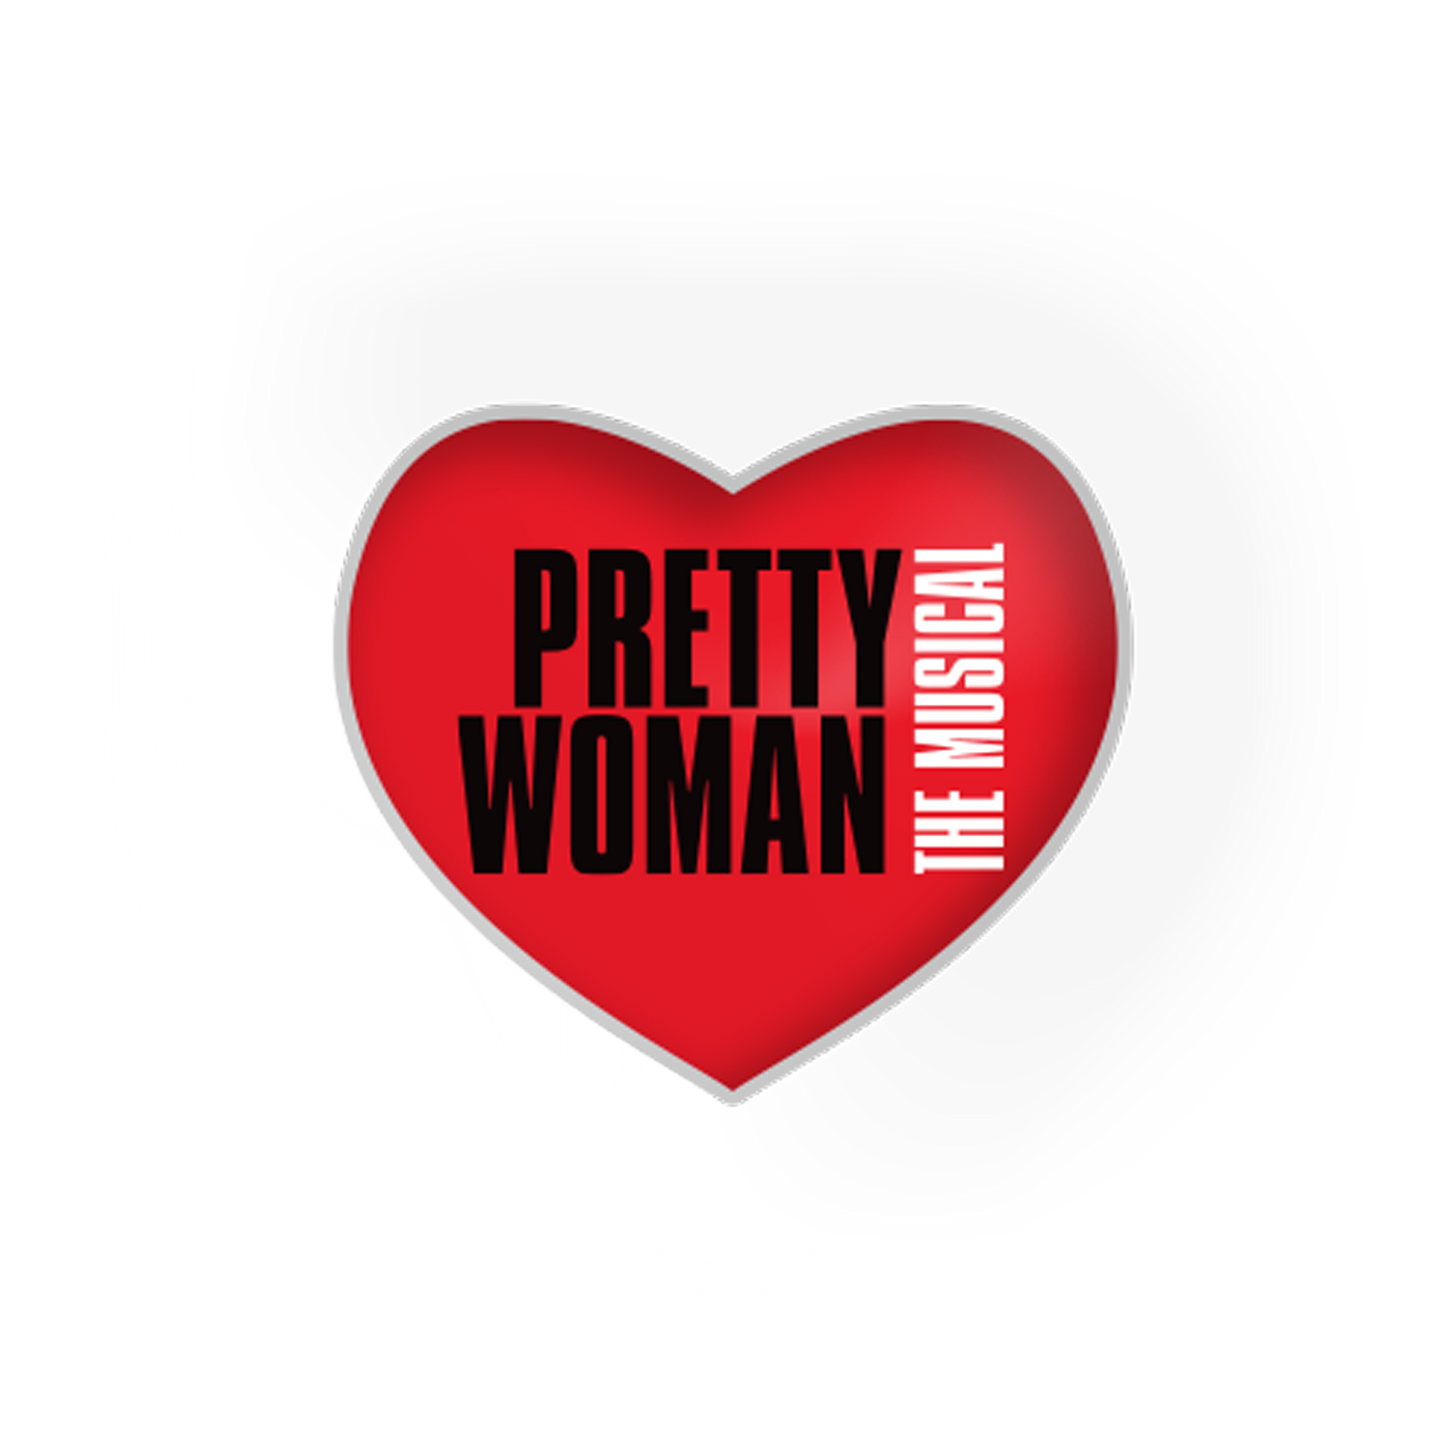 PRETTY WOMAN Logo Heart Lapel Pin